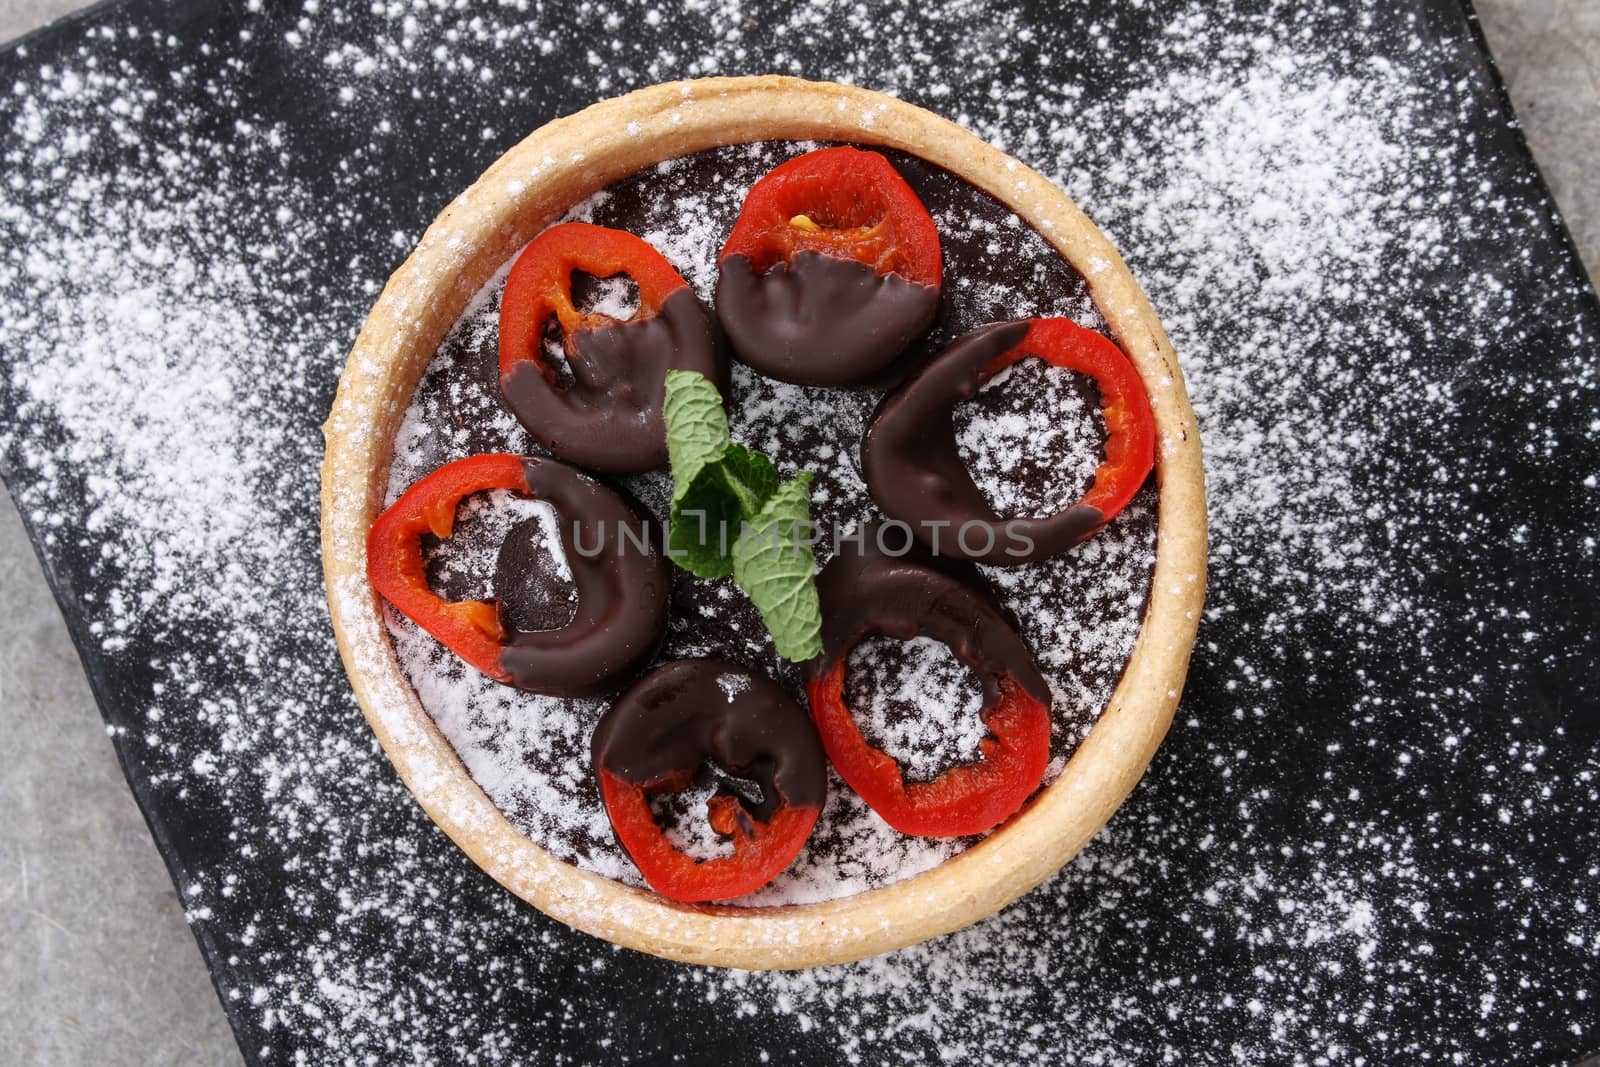 mini chocolate tarts with chili